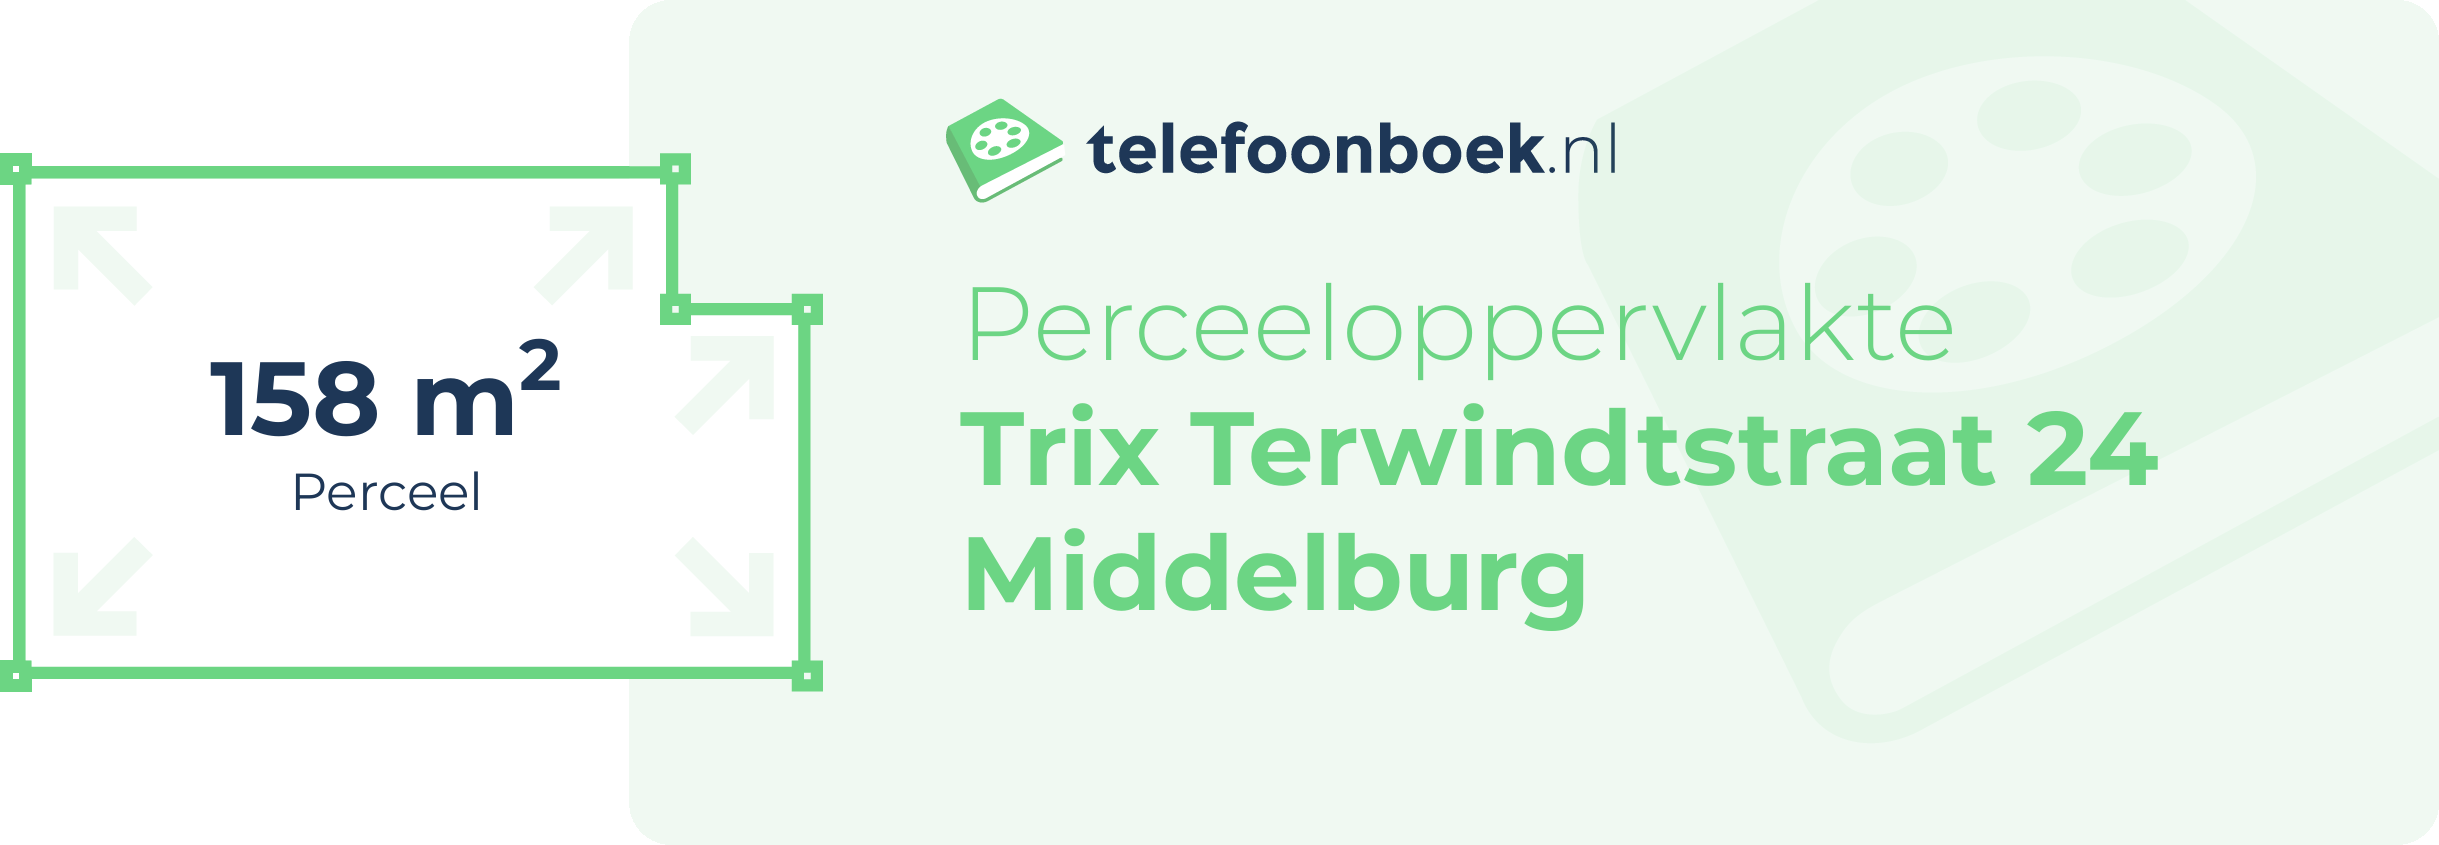 Perceeloppervlakte Trix Terwindtstraat 24 Middelburg